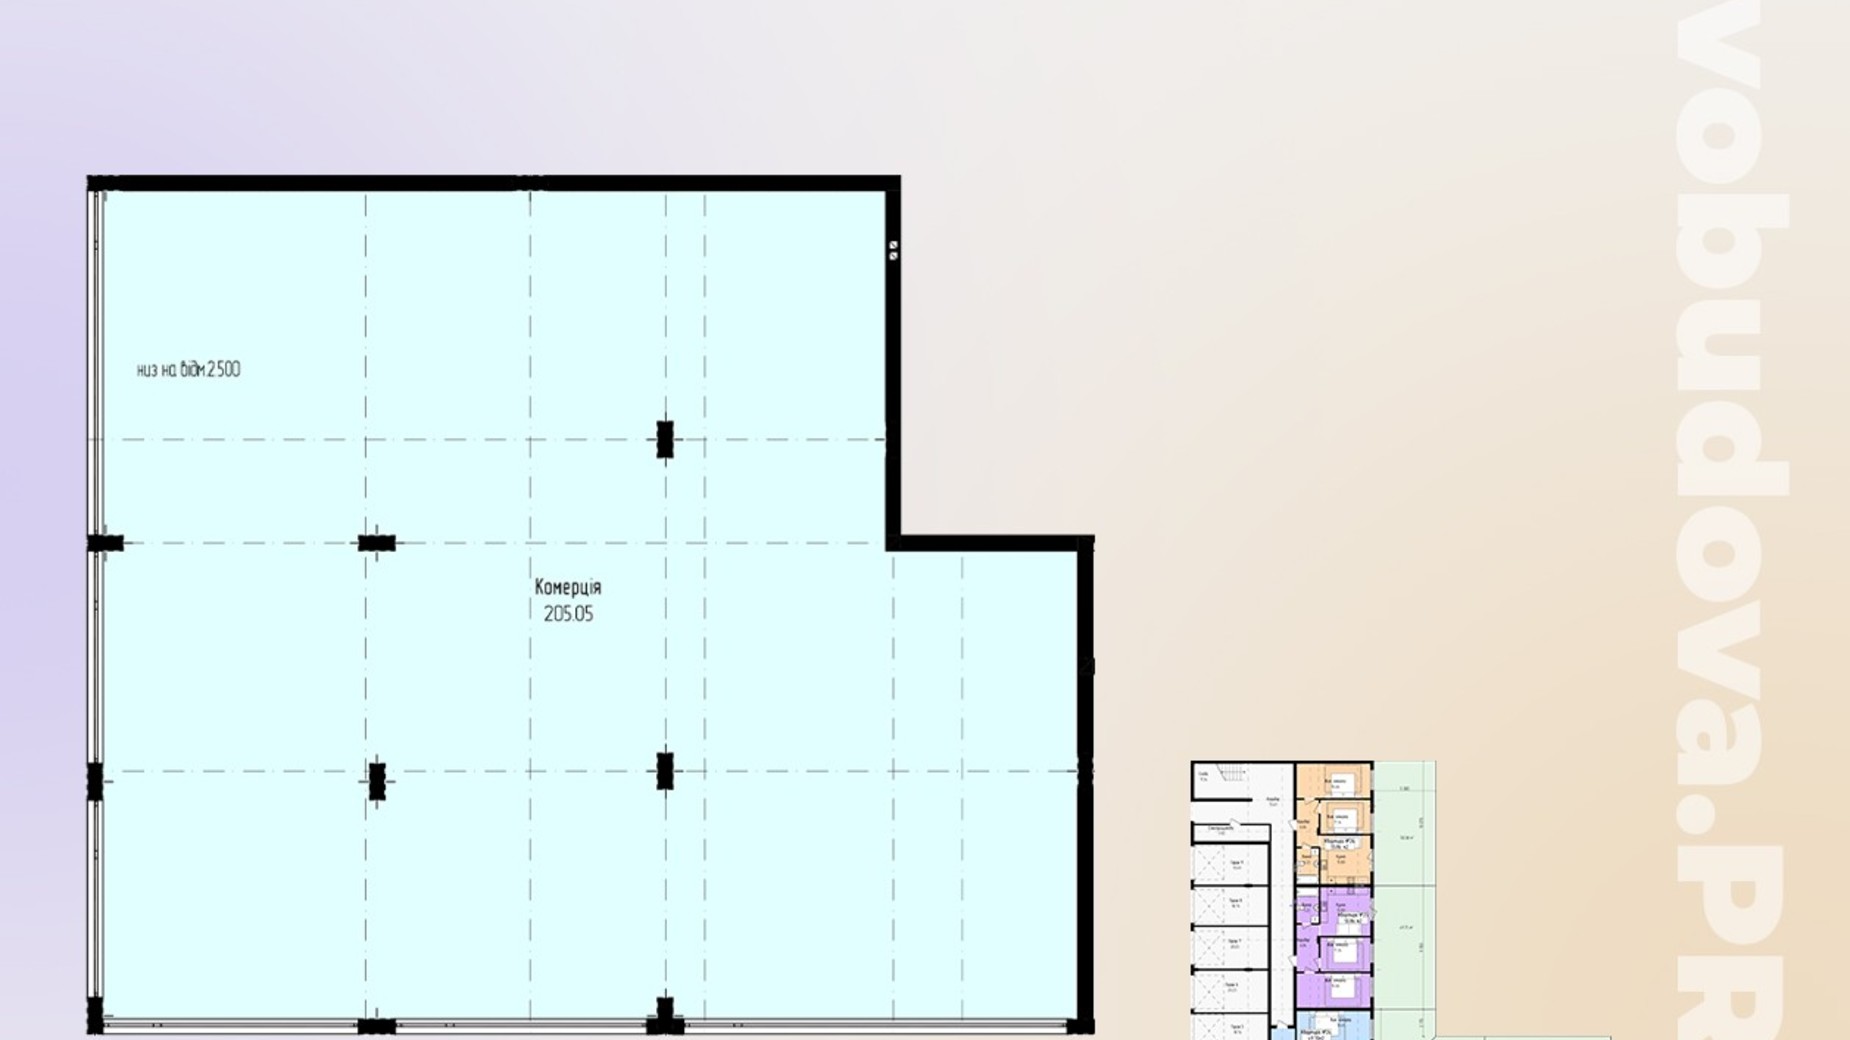 Планування 1-кімнатної квартири в ЖК Зелений 205.05 м², фото 647688